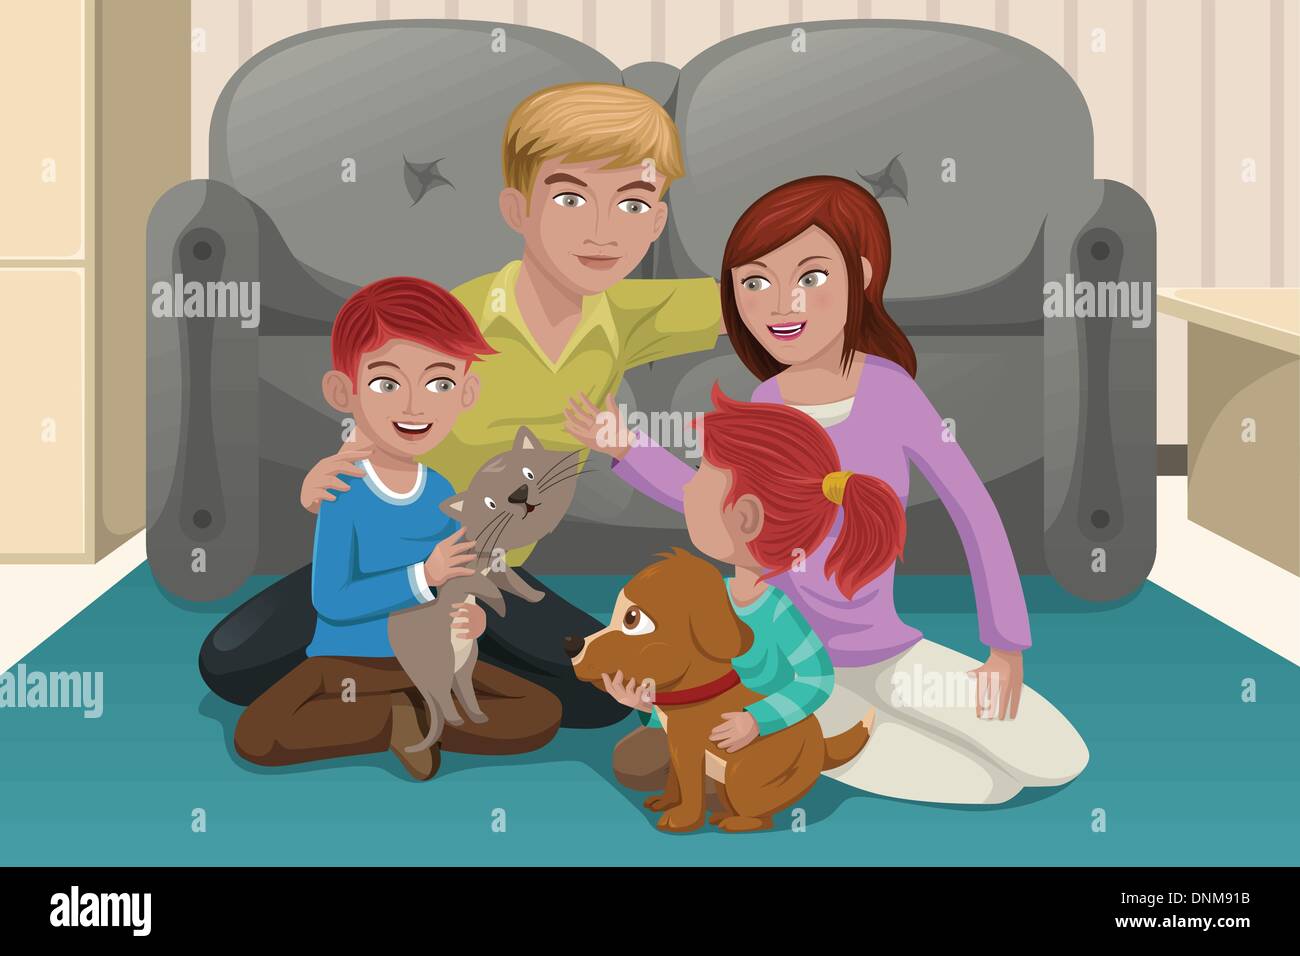 Eine Vektor-Illustration der glückliche Familie zusammen mit ihren Haustieren spielen Stock Vektor